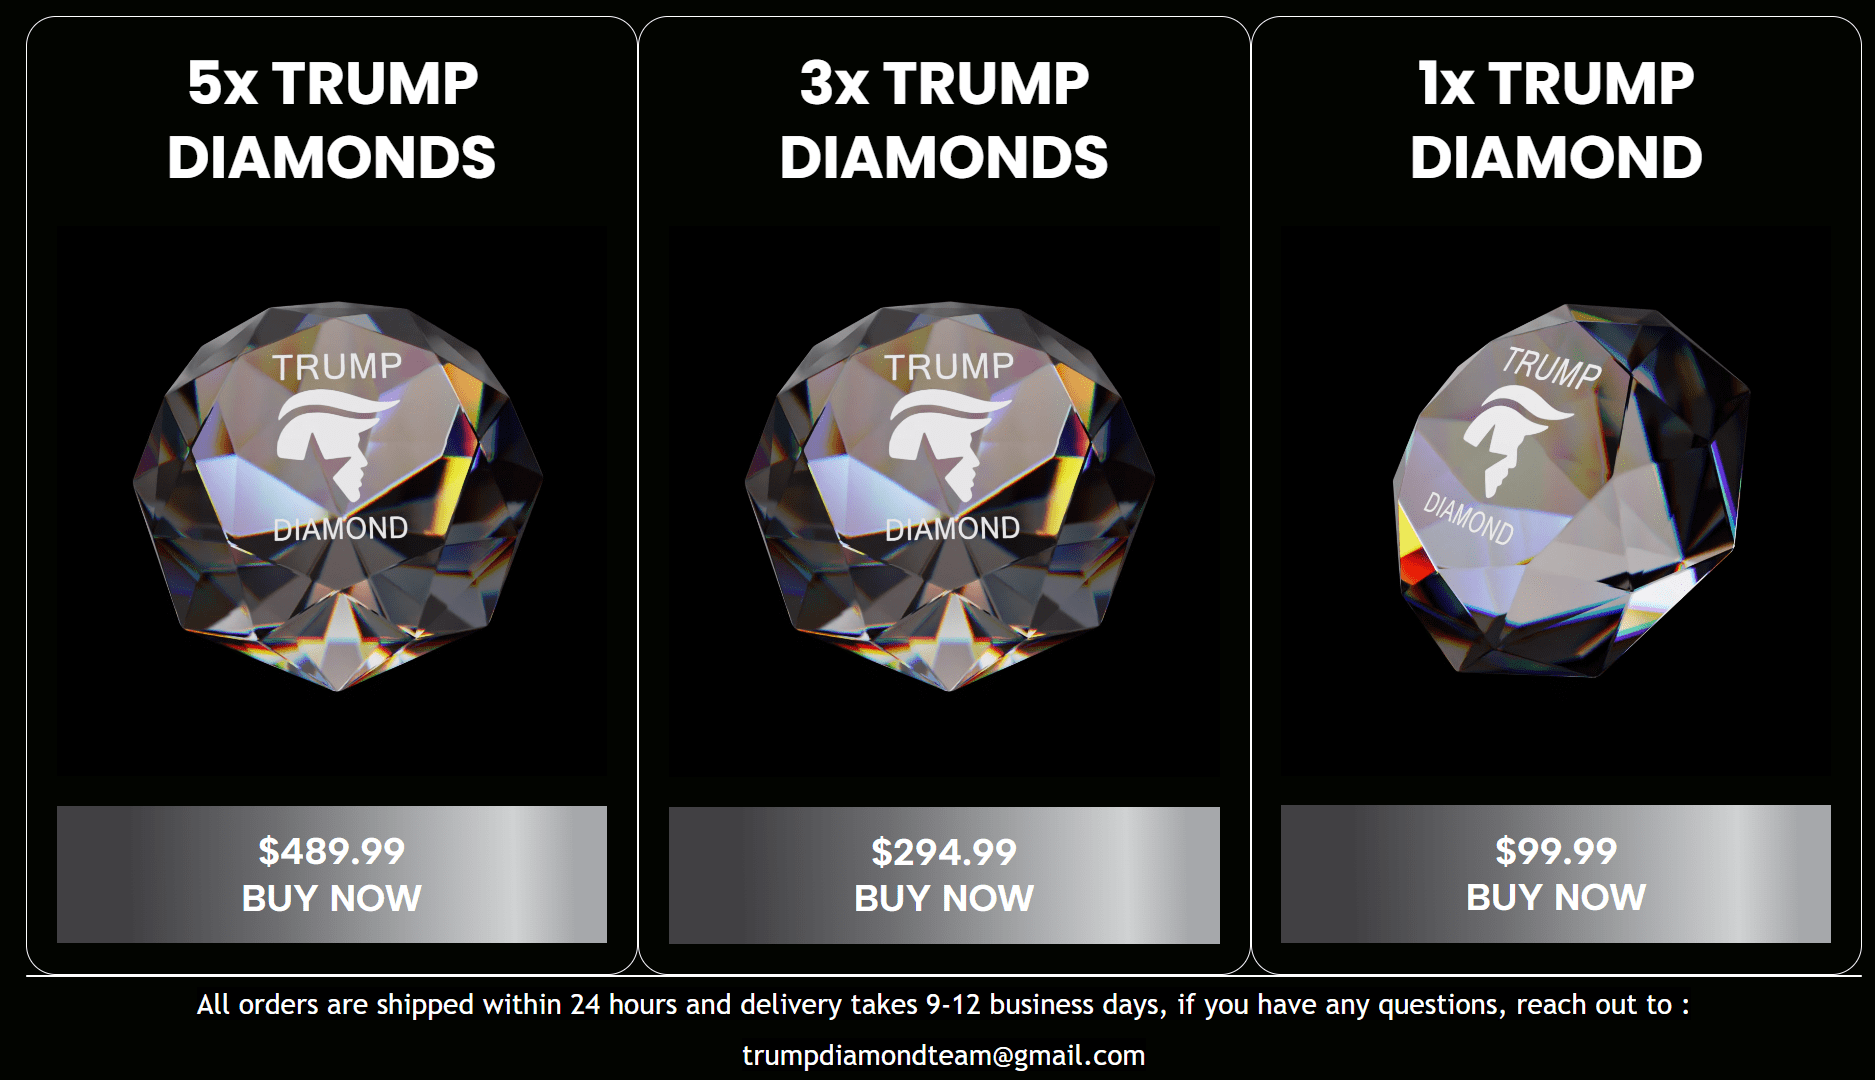 Trump Diamond Pricing